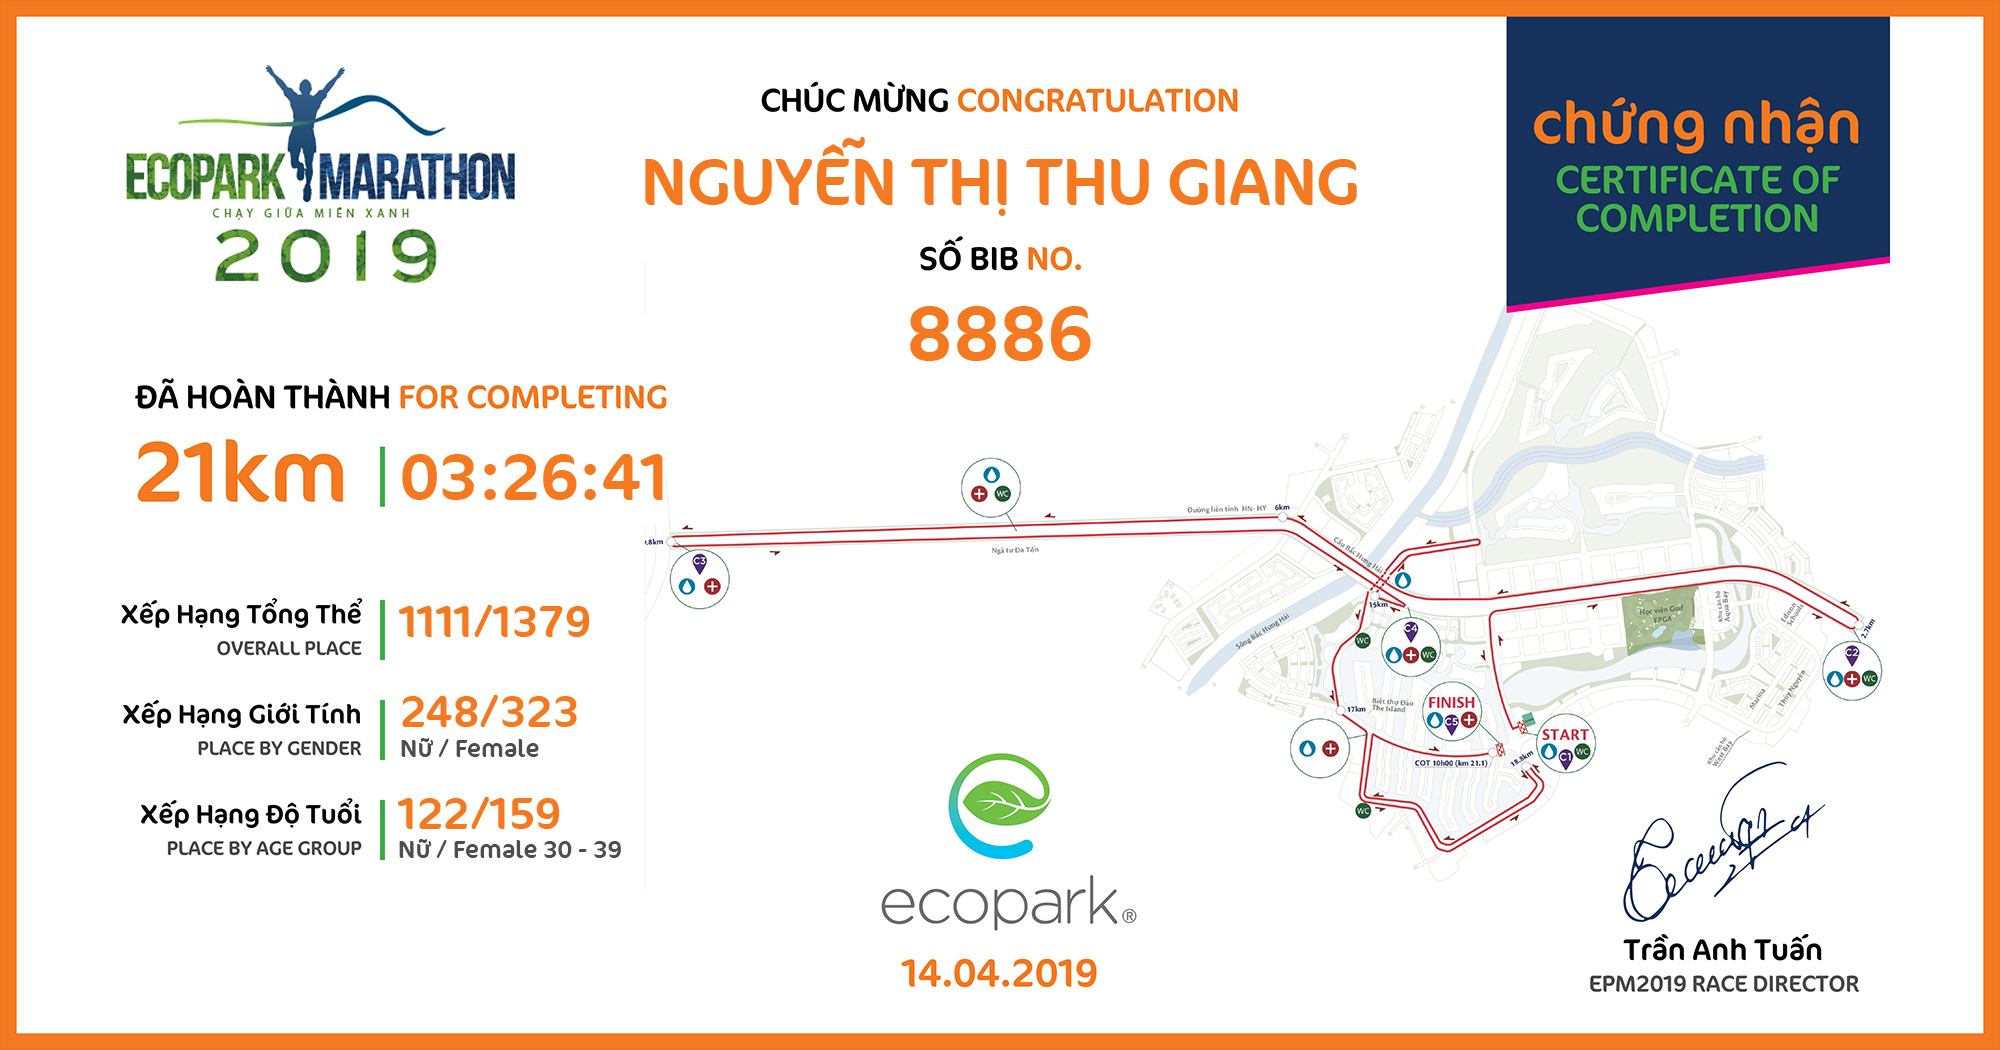 8886 - Nguyễn thị thu giang